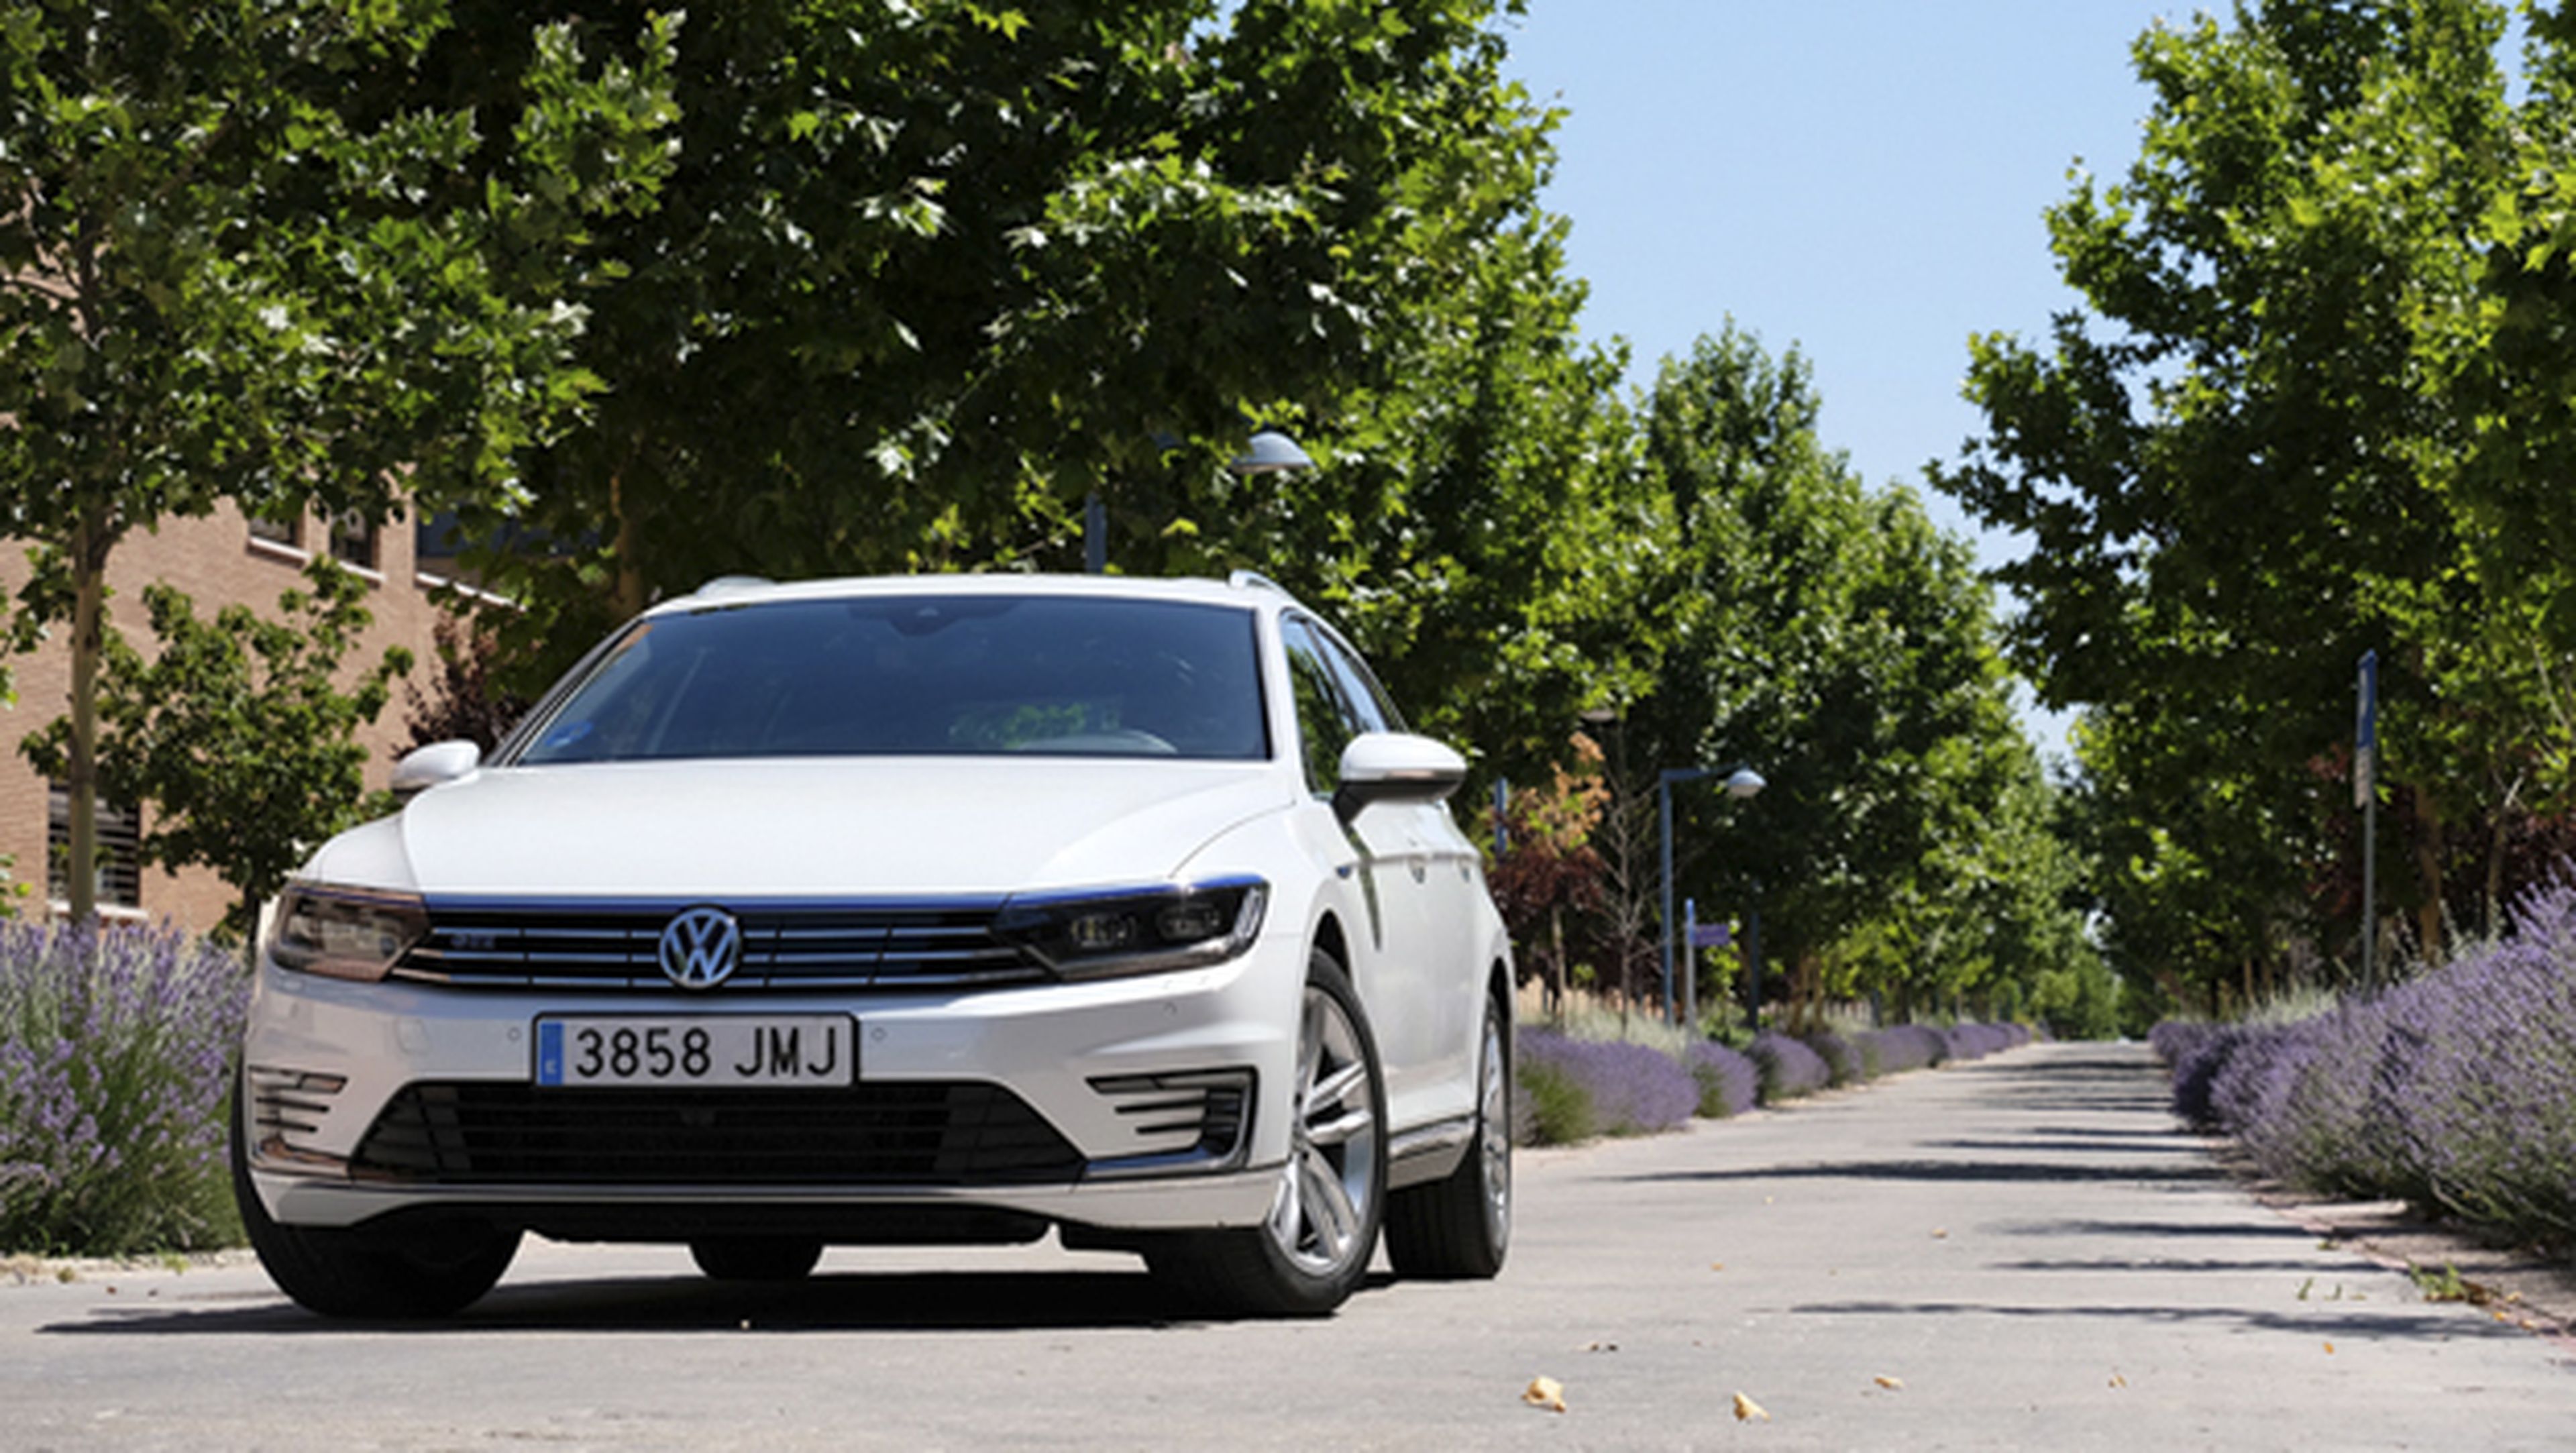 Volkswagen Passat GTE, toma de contacto de su tecnología